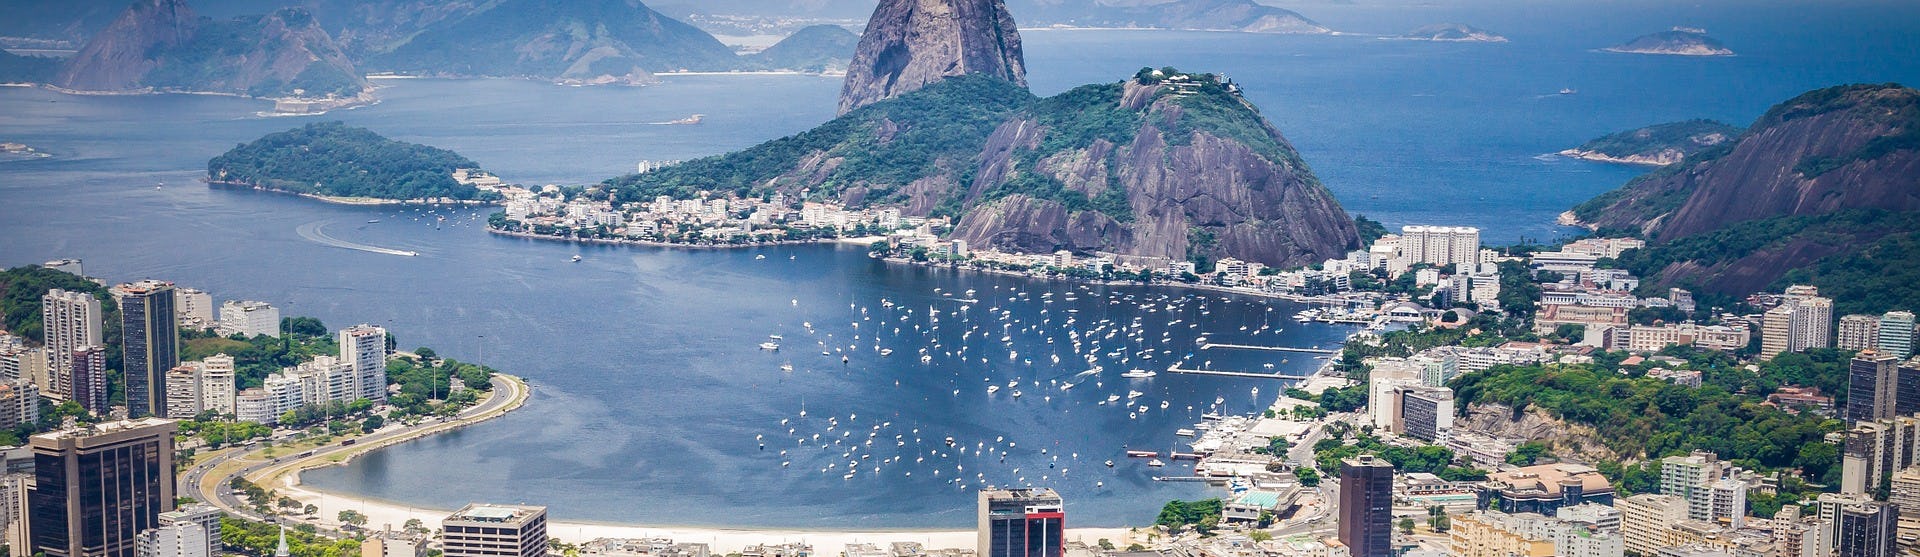 Bild ovanifrån på Rio de Janeiro i Brasilien med höga hus, stranden, berg och lagunen.